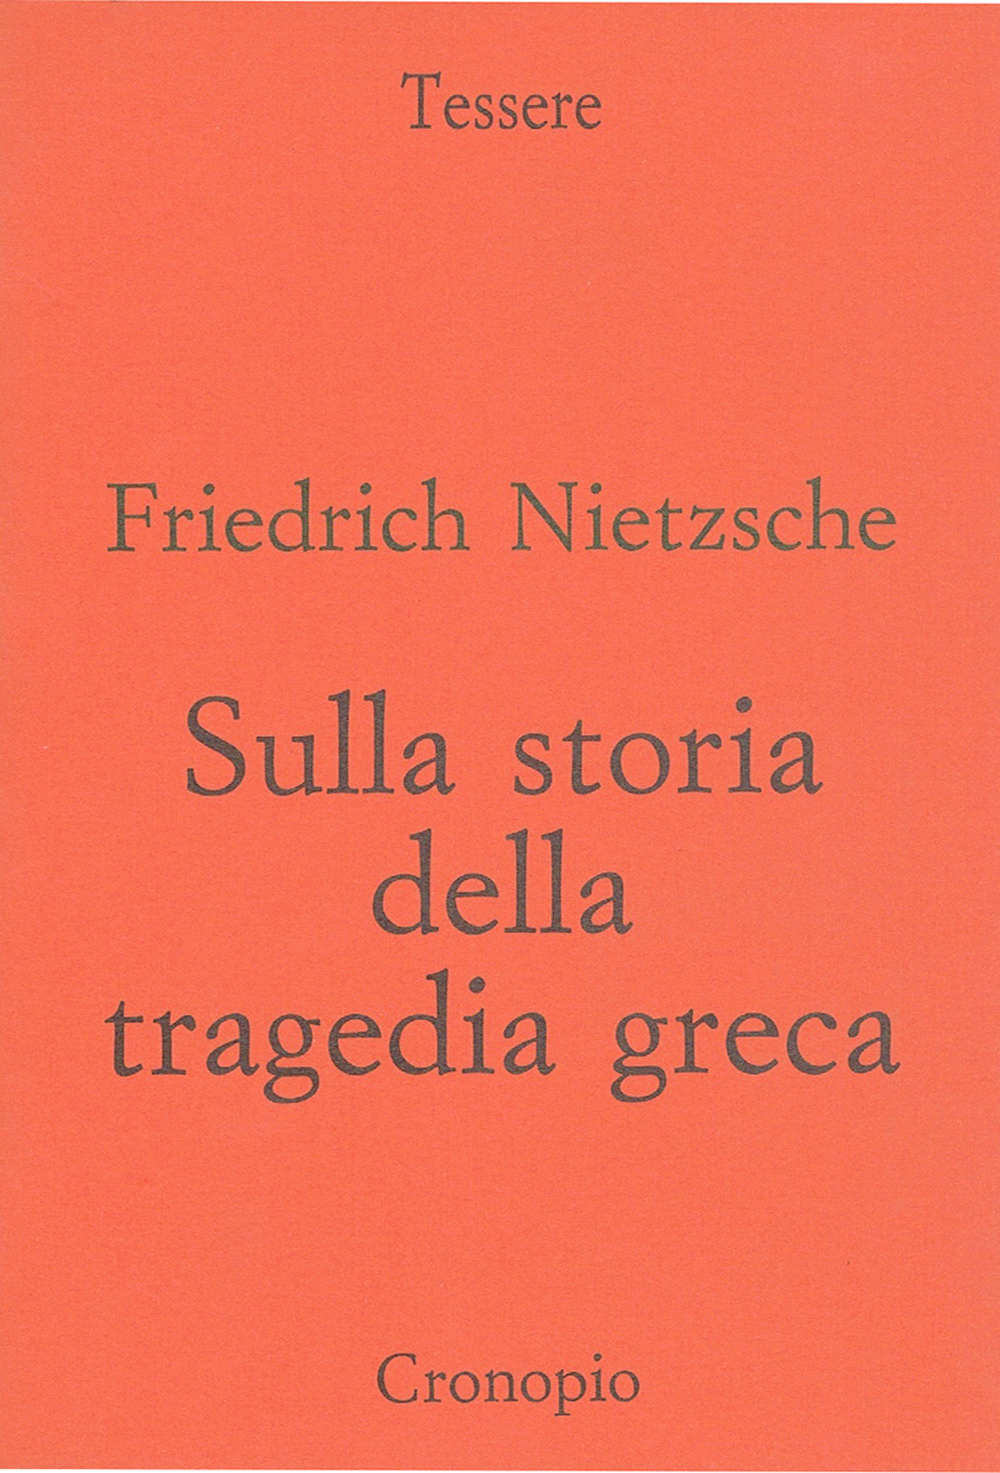 Friedrich Nietzsche, Sulla storia della tragedia greca